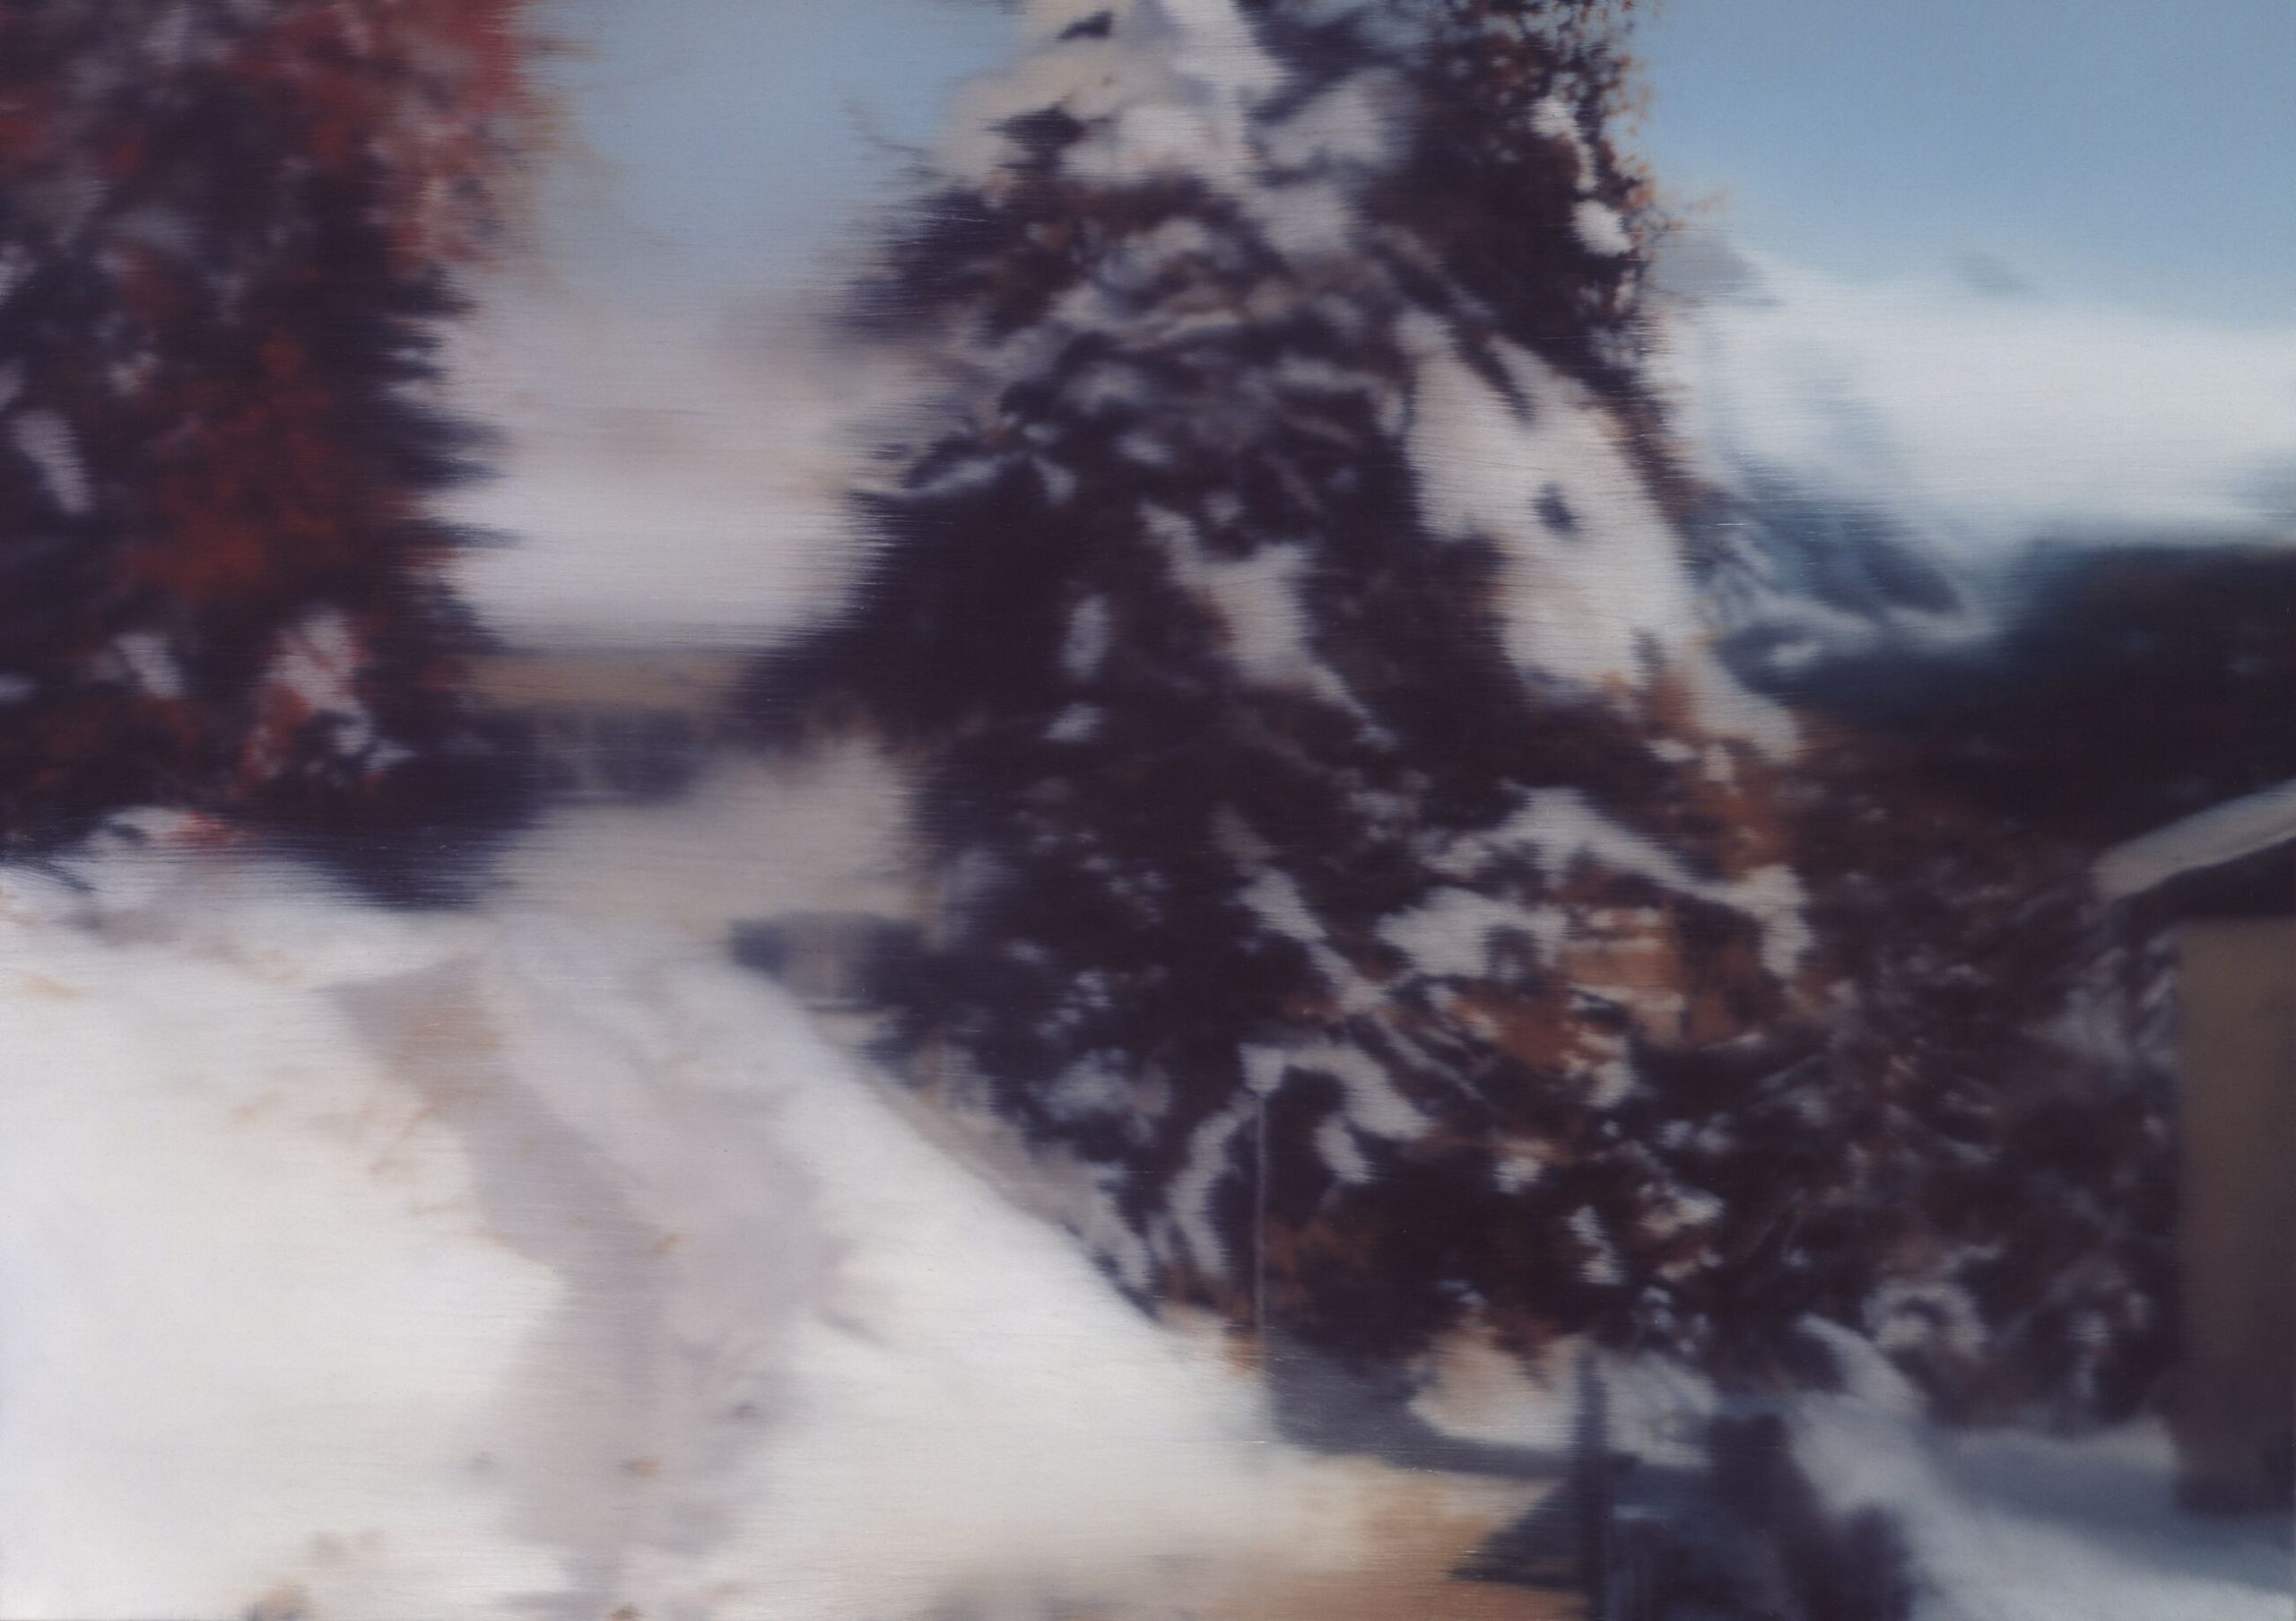 Gerhard Richter a tu per tu con il paesaggio alpino dell’Engadina